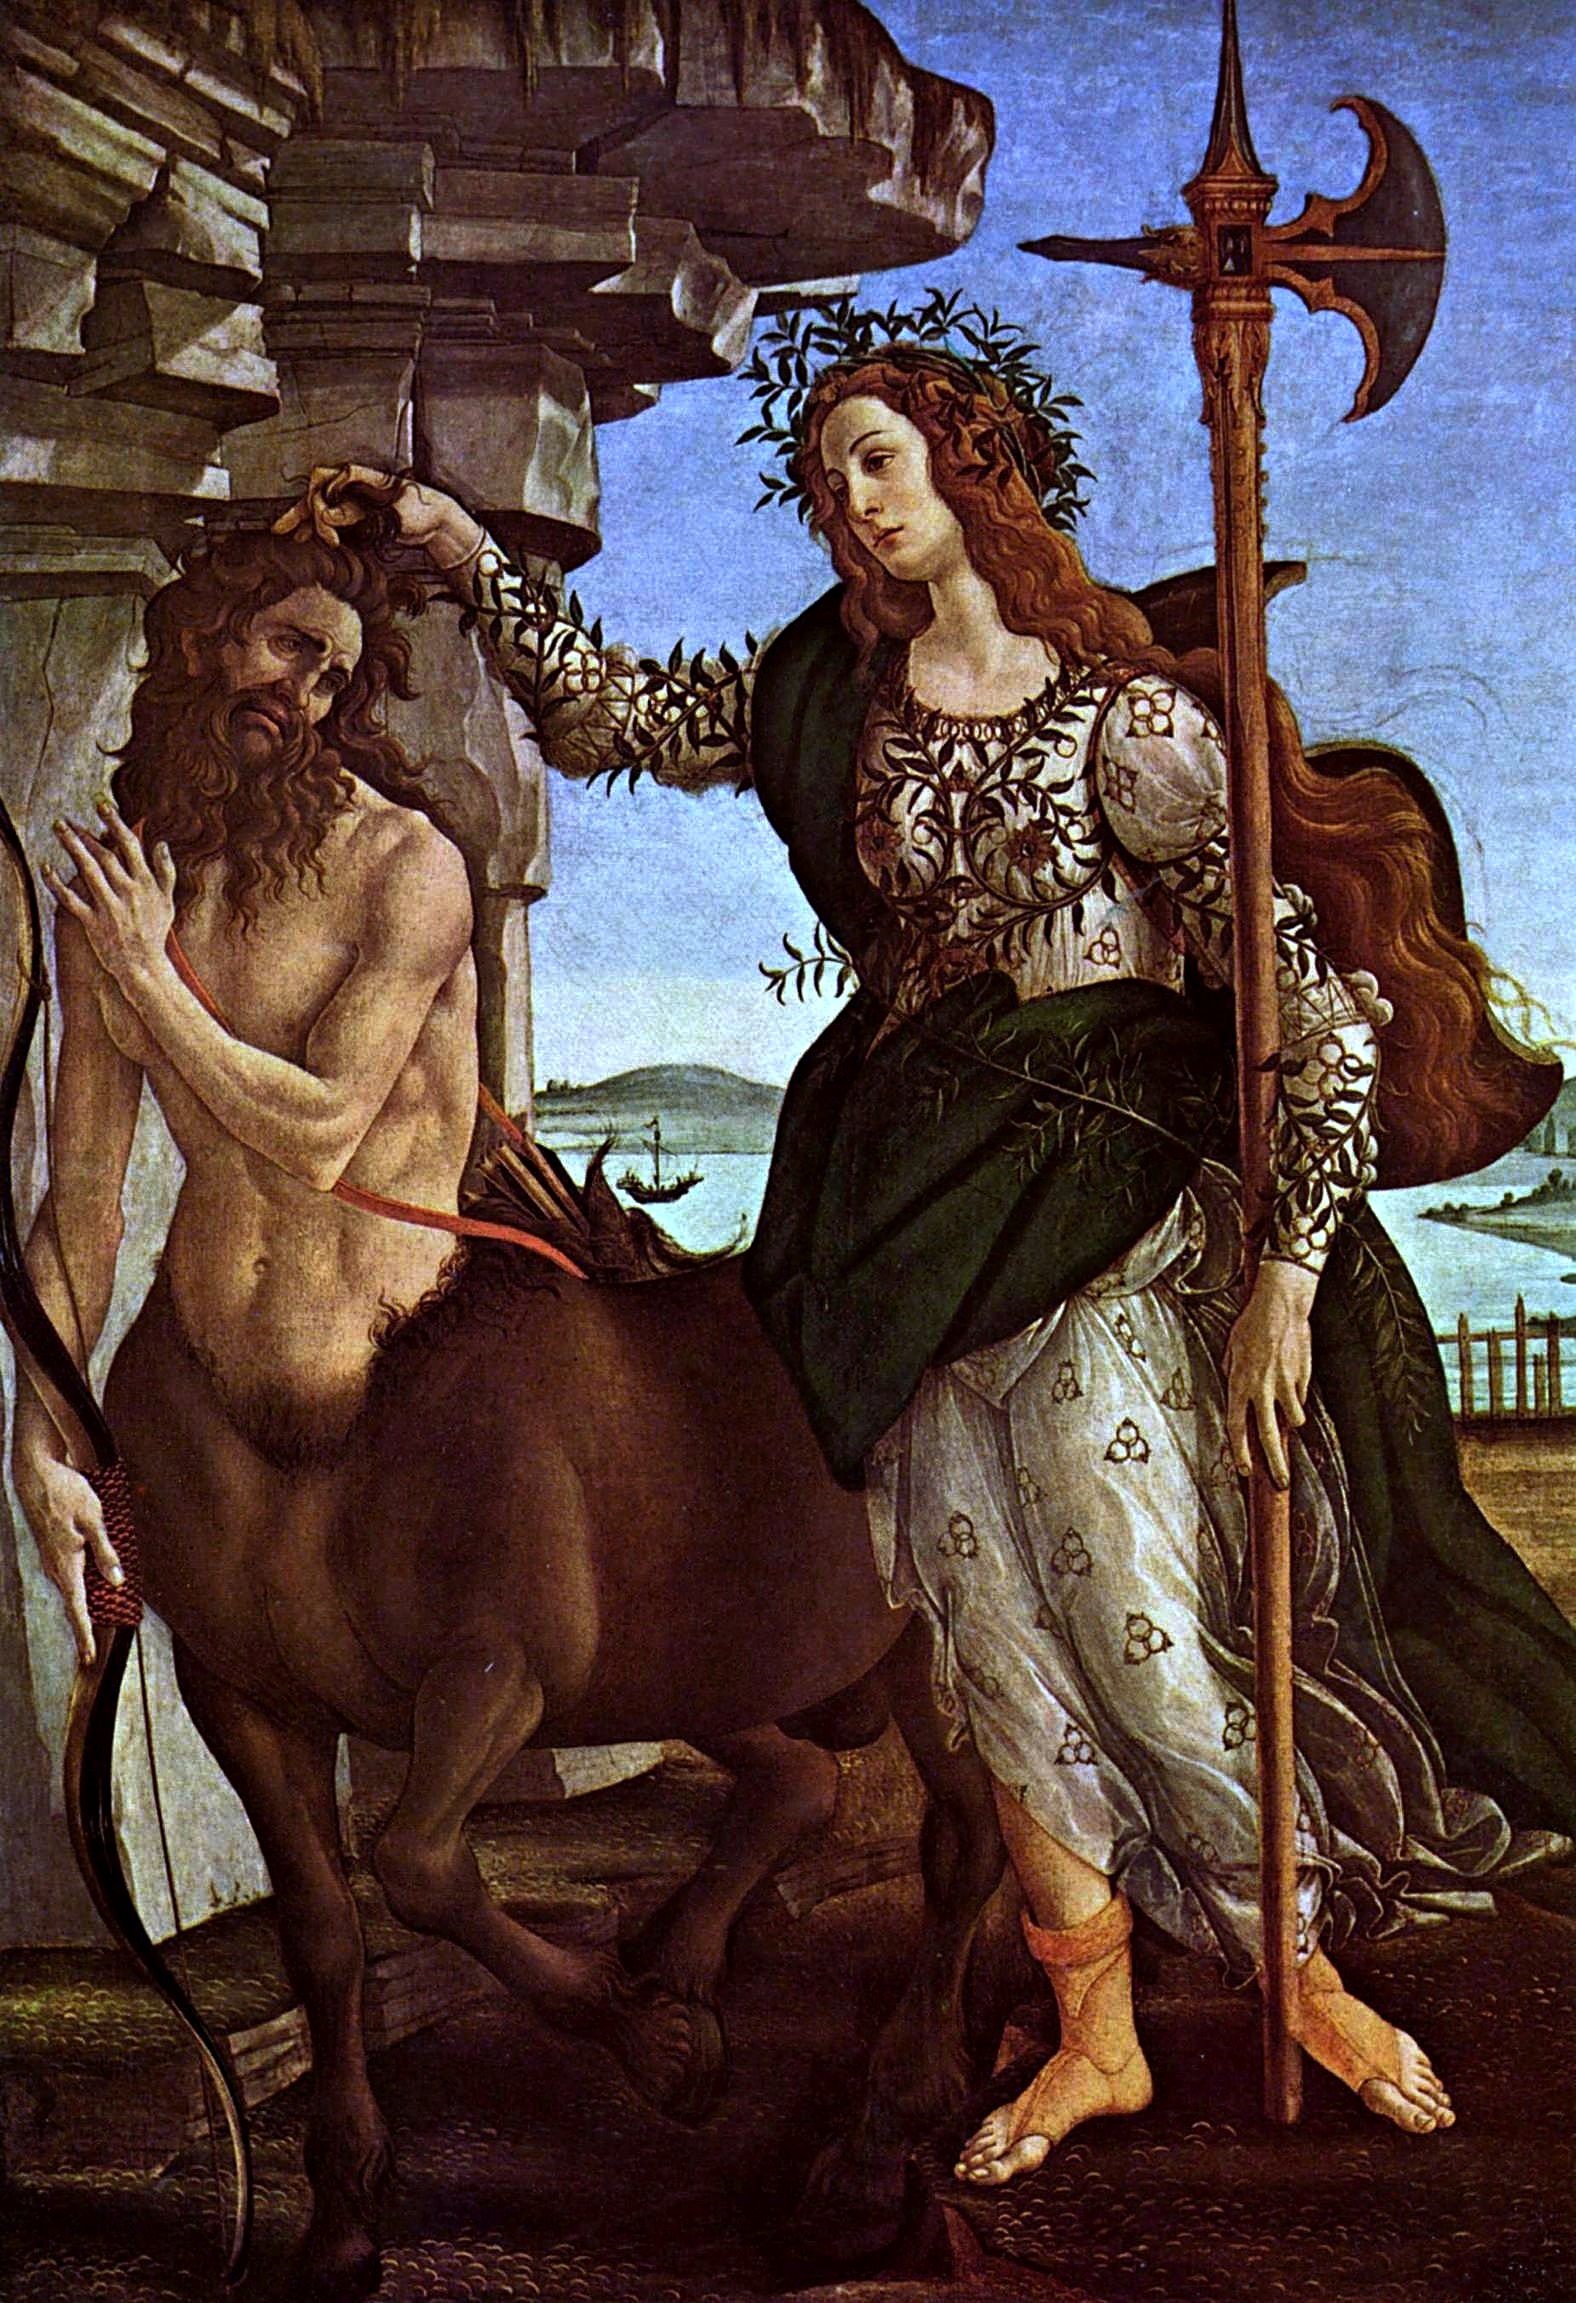 Pallade e il centauro by Sandro Botticelli - 1482 - 207 x 148 cm 